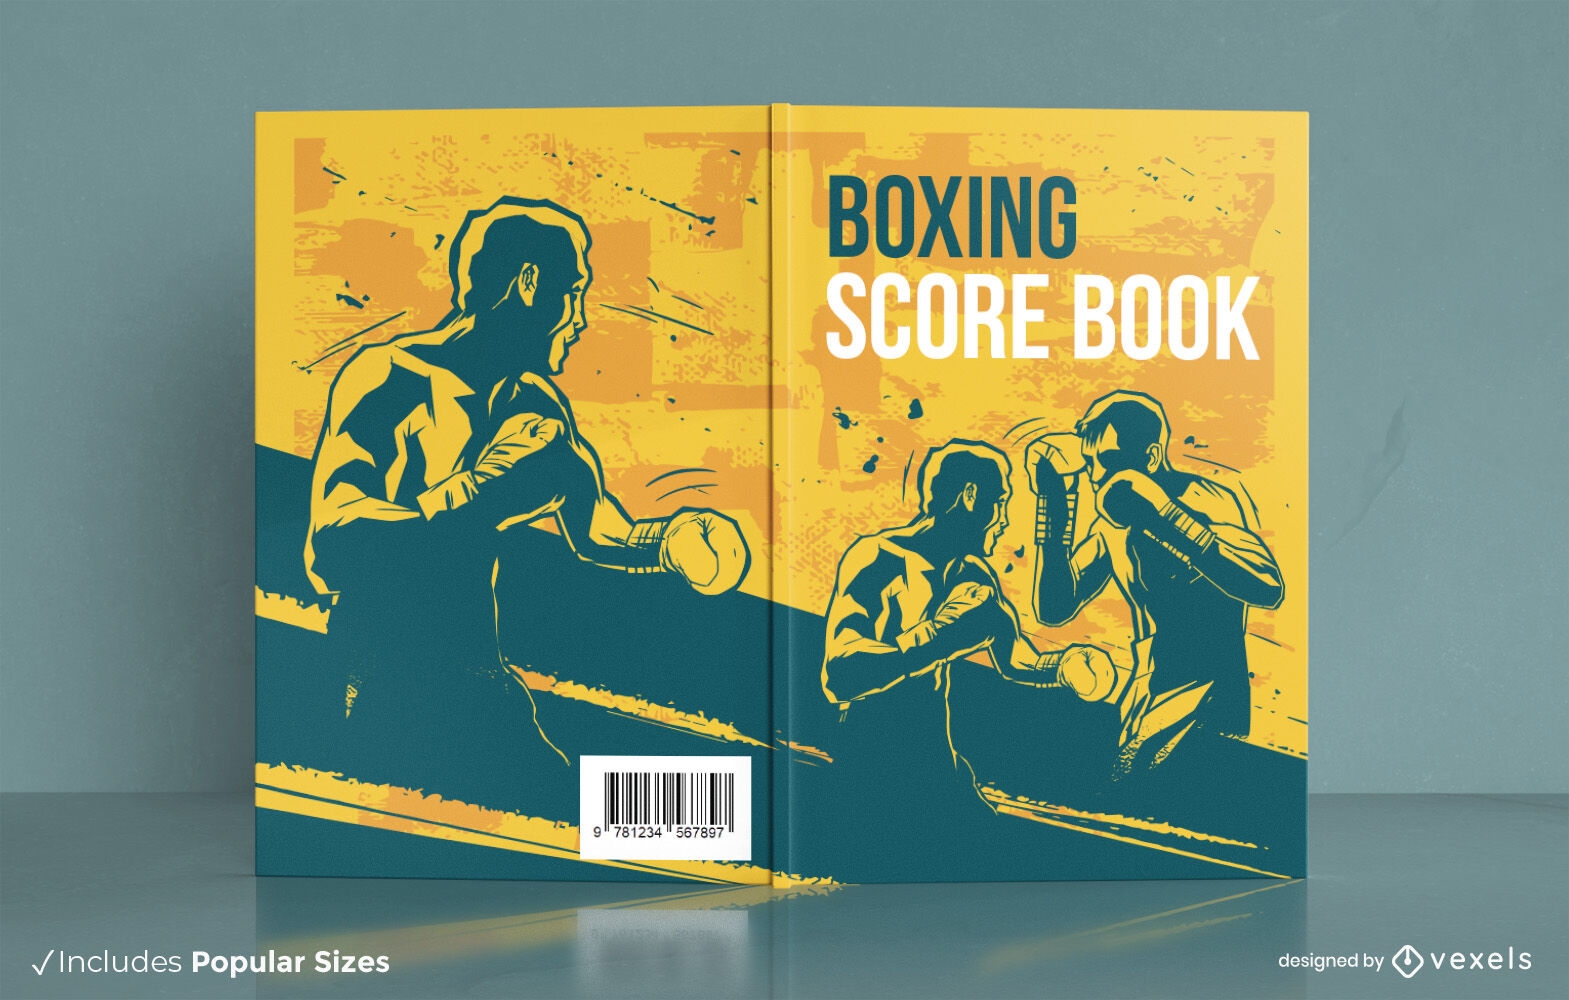 Boxeo de personas para el diseño de portadas de libros deportivos.